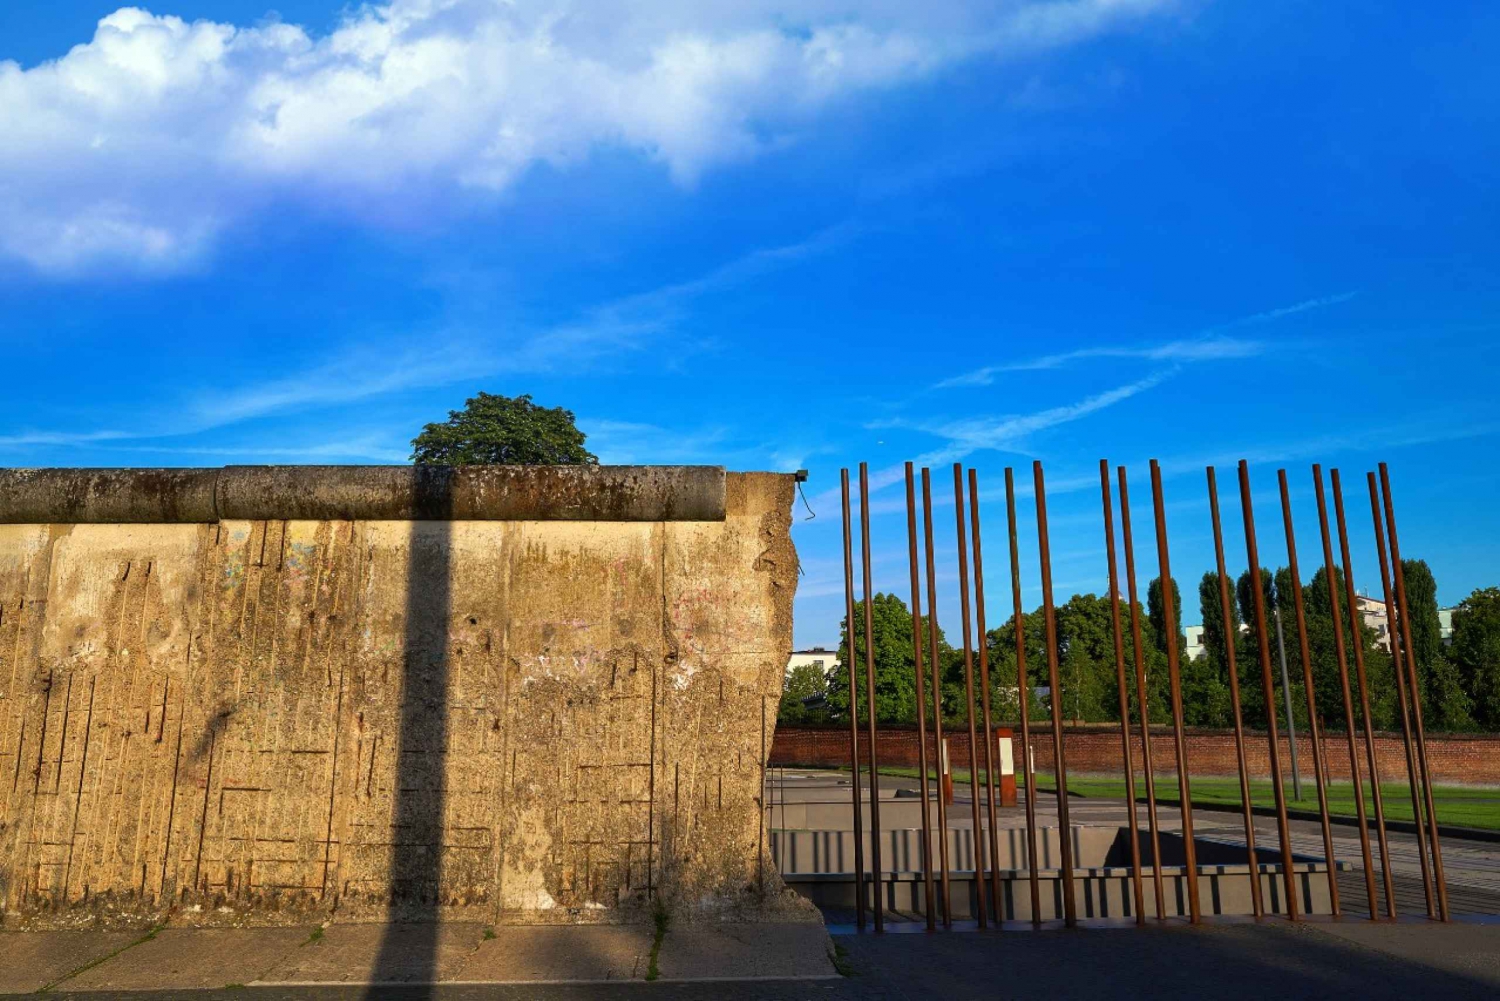 Berlin: Kalla krigets historia och Berlinmuren Guidad rundtur